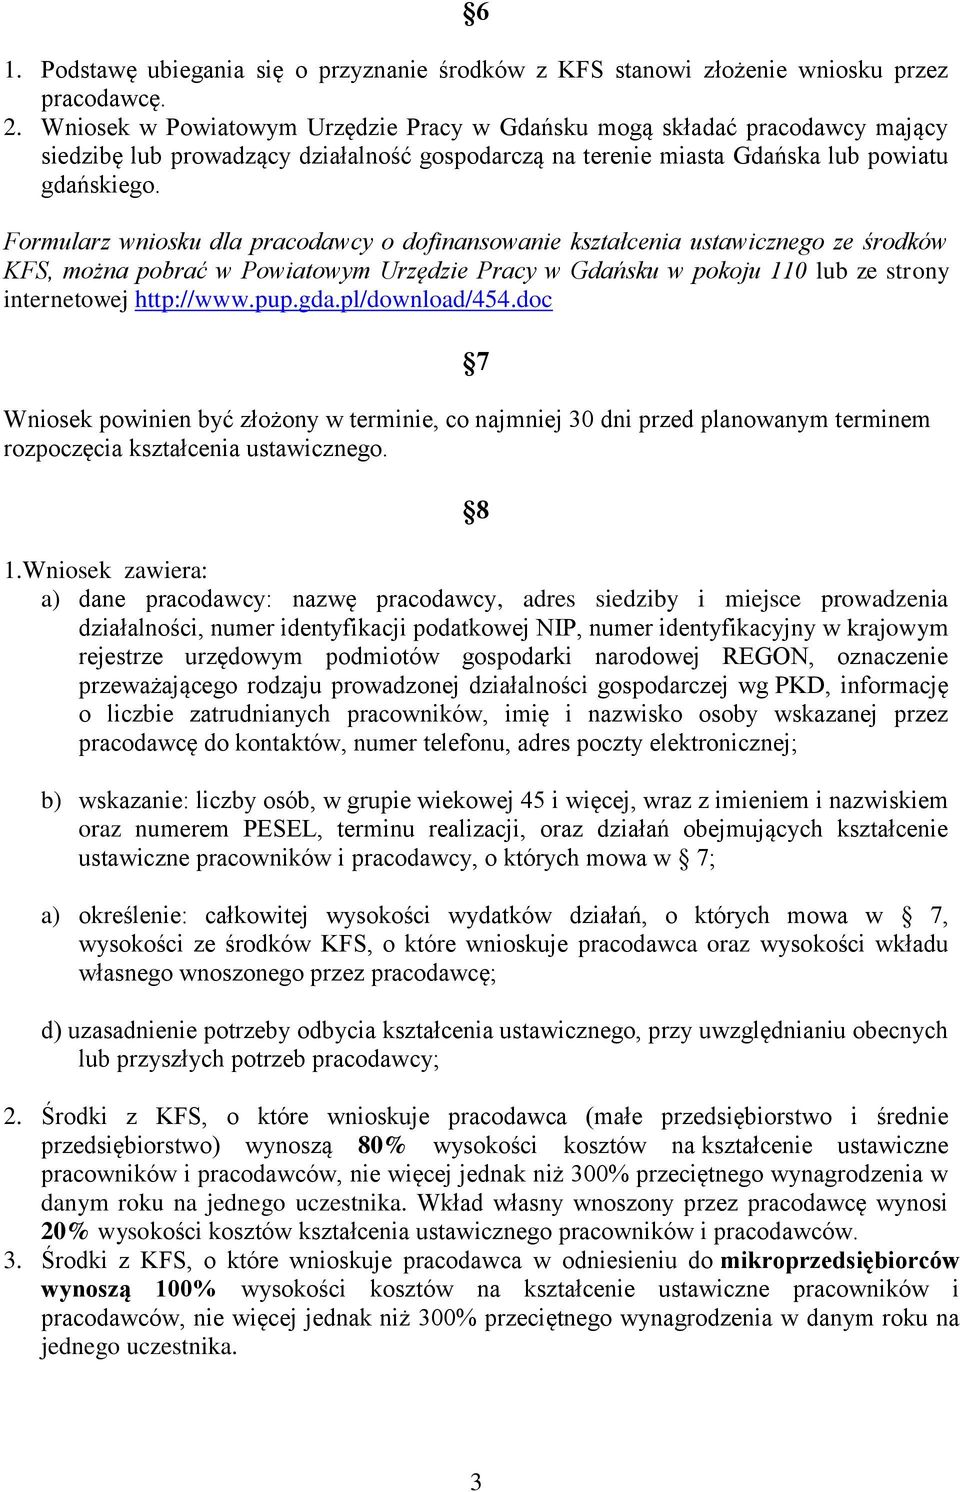 Formularz wniosku dla pracodawcy o dofinansowanie kształcenia ustawicznego ze środków KFS, można pobrać w Powiatowym Urzędzie Pracy w Gdańsku w pokoju 110 lub ze strony internetowej http://www.pup.